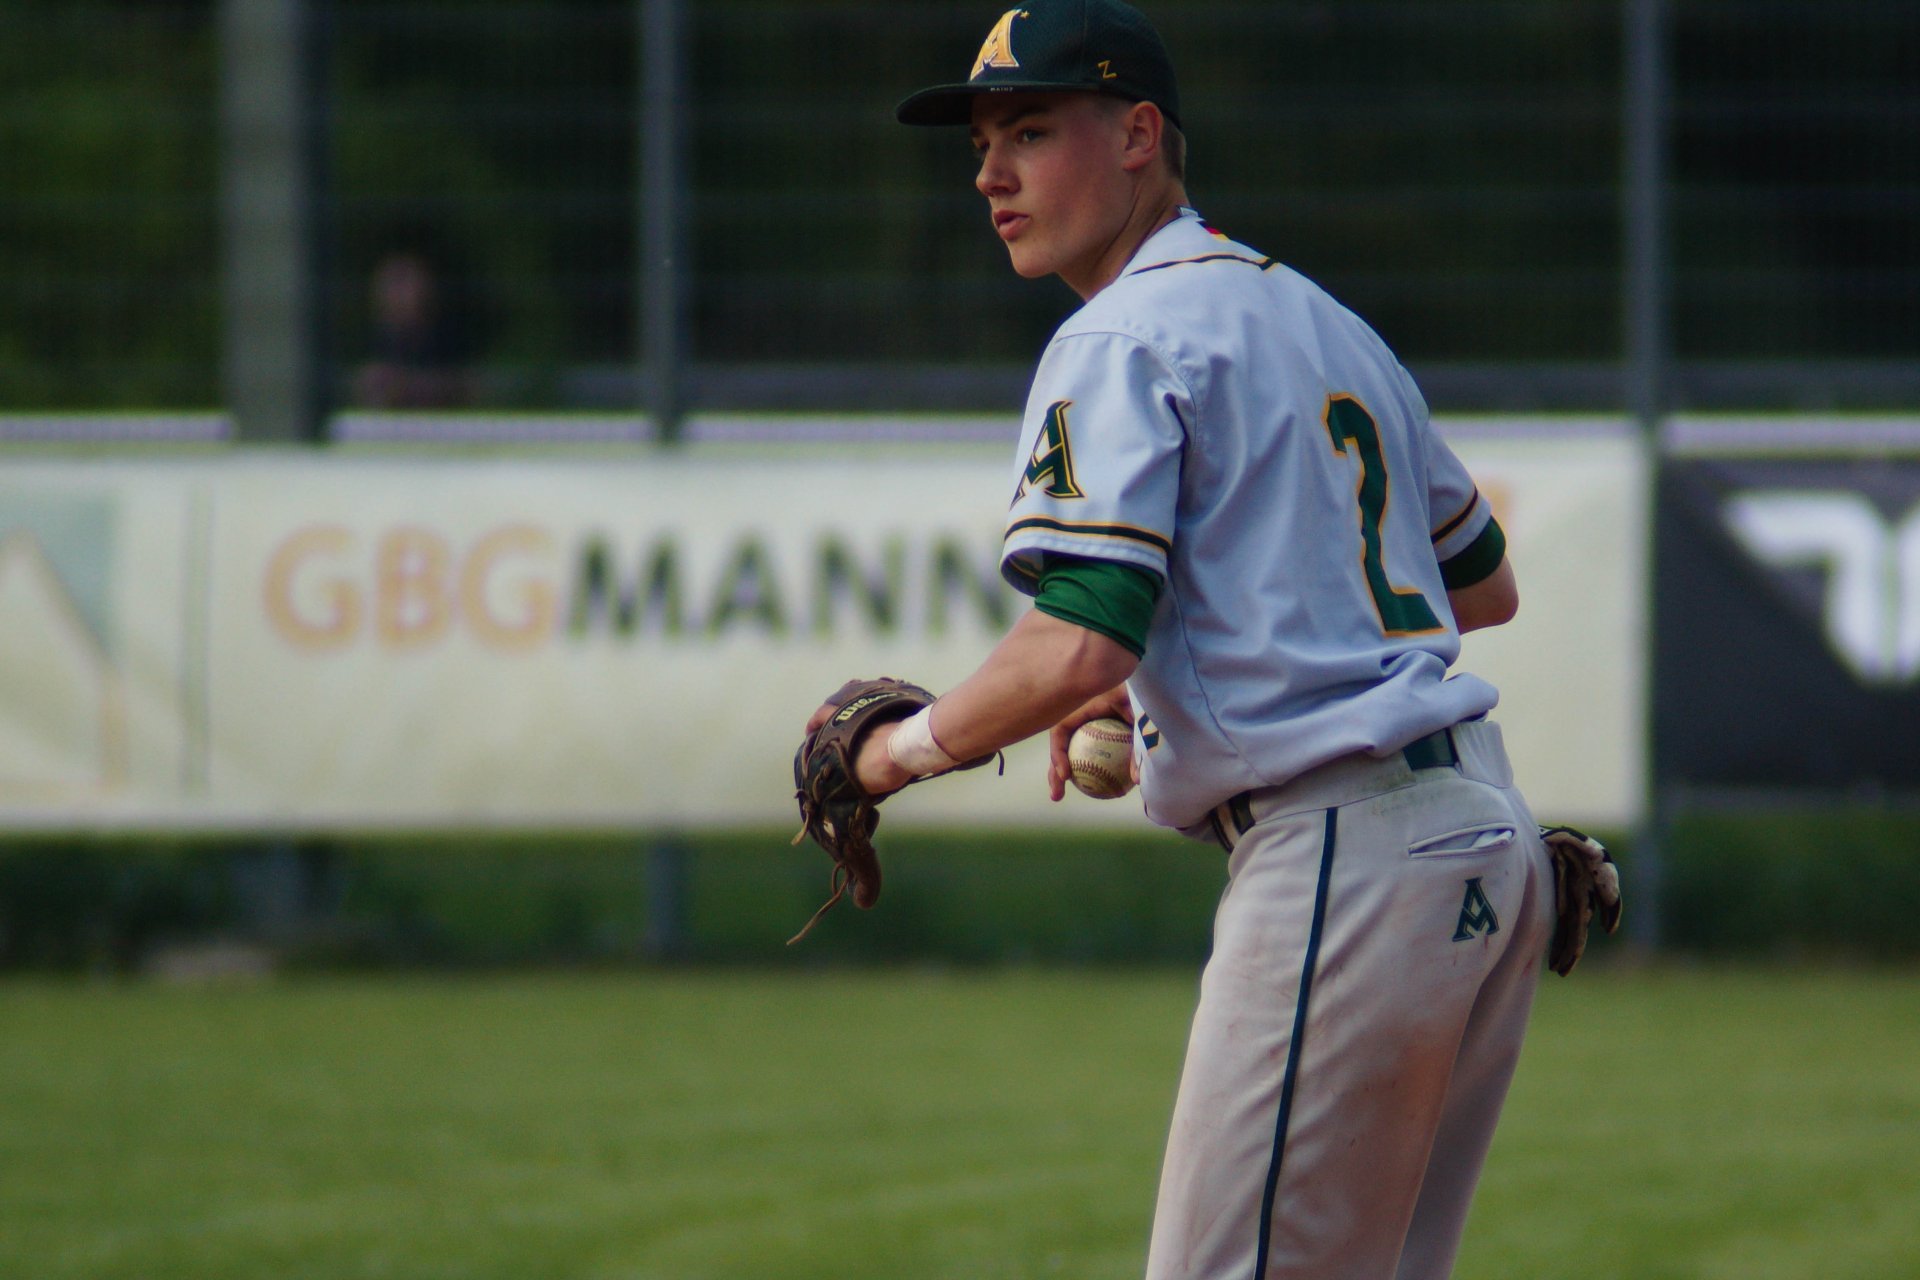 SEPTEMBER - Eine Bundesligasaison hat Lucas Dickman für die Mainz Athletics in der Baseball-Bundesliga absolviert, da ist er auch schon weg: Der 18-Jährige wechselt zu den Regensburg Legionären und will sich dort für einen Profivertrag in den USA empfehlen.  